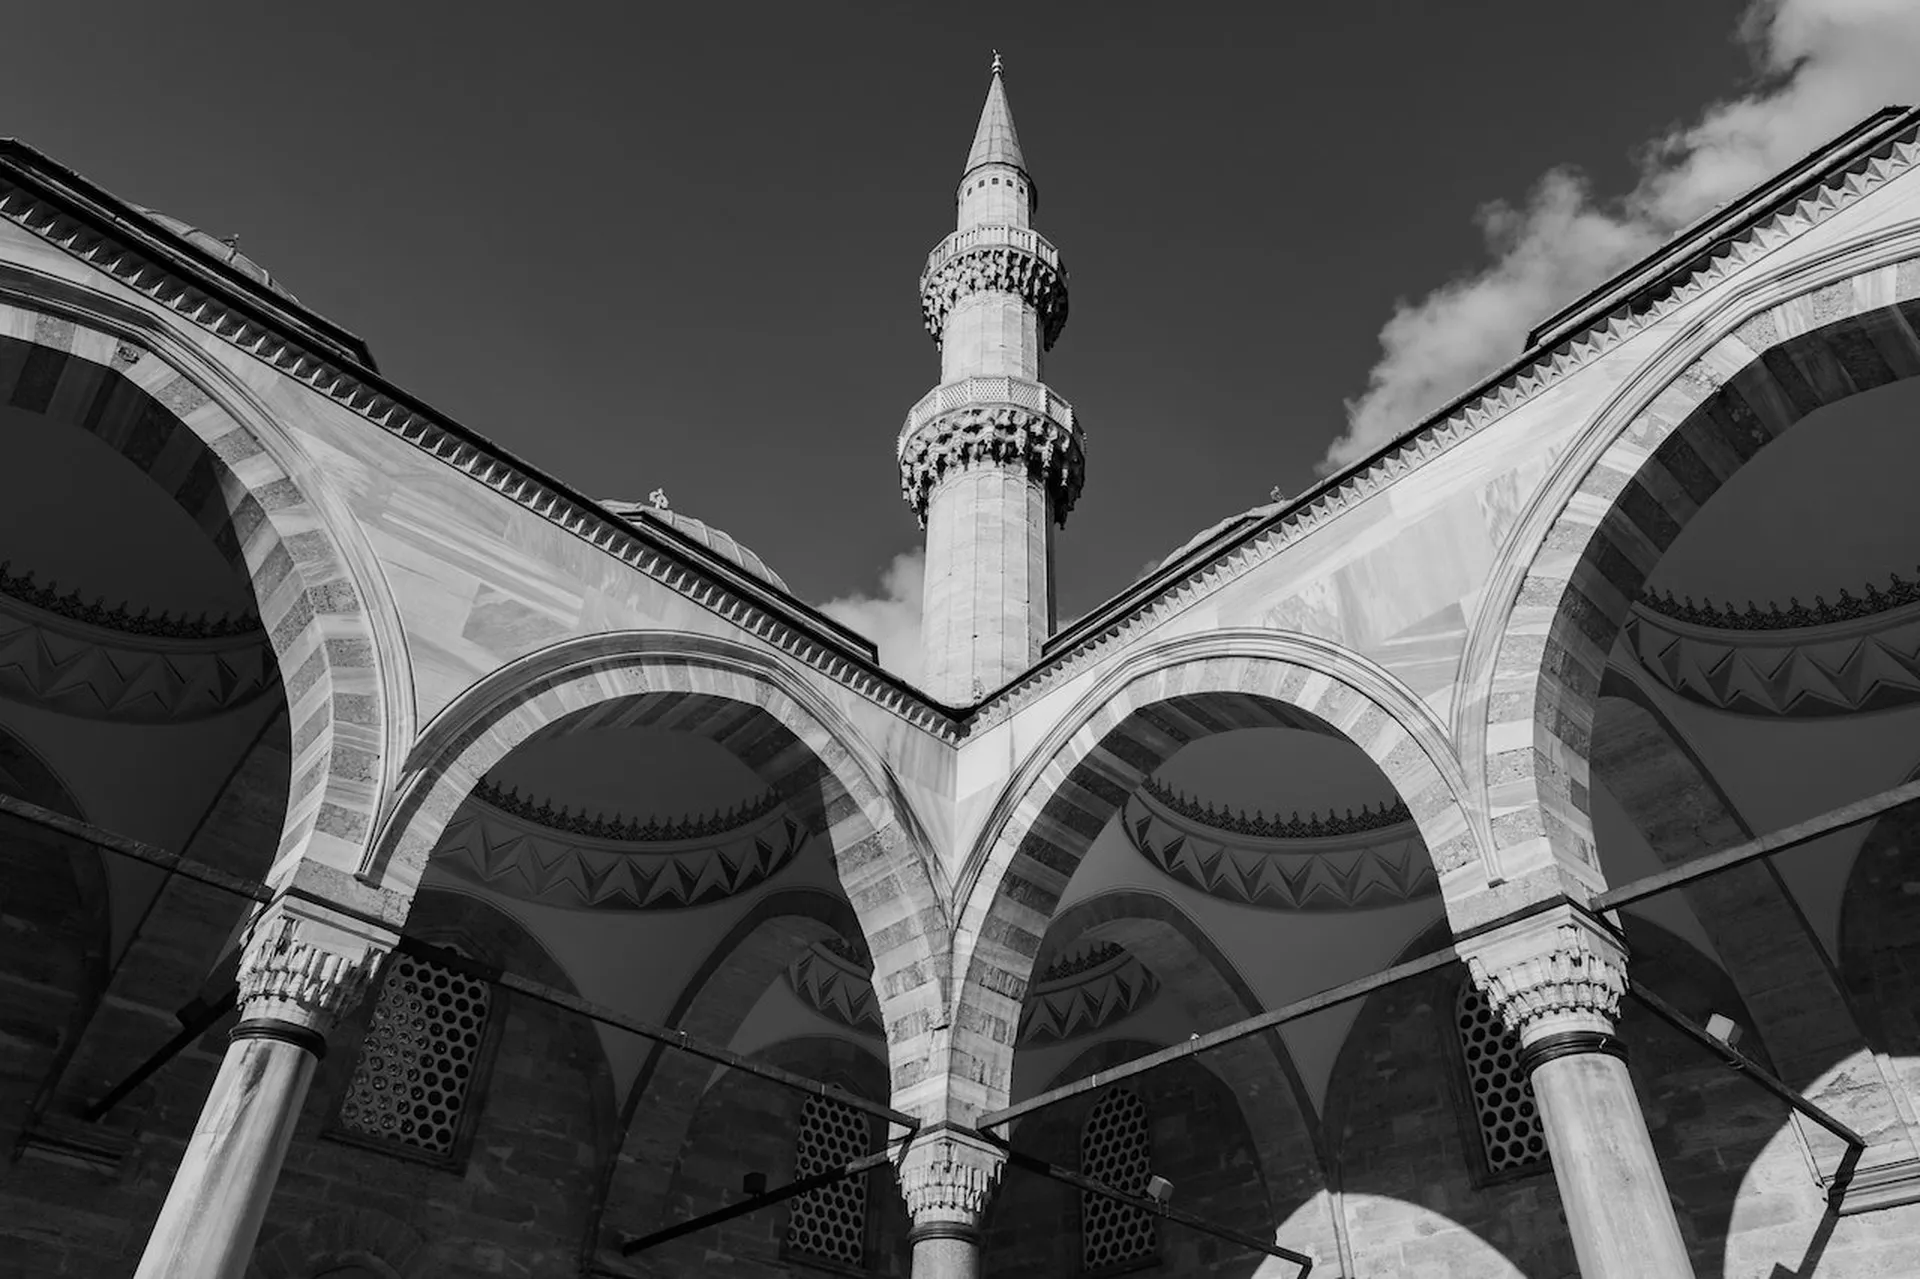 Hofuf Market Mosque